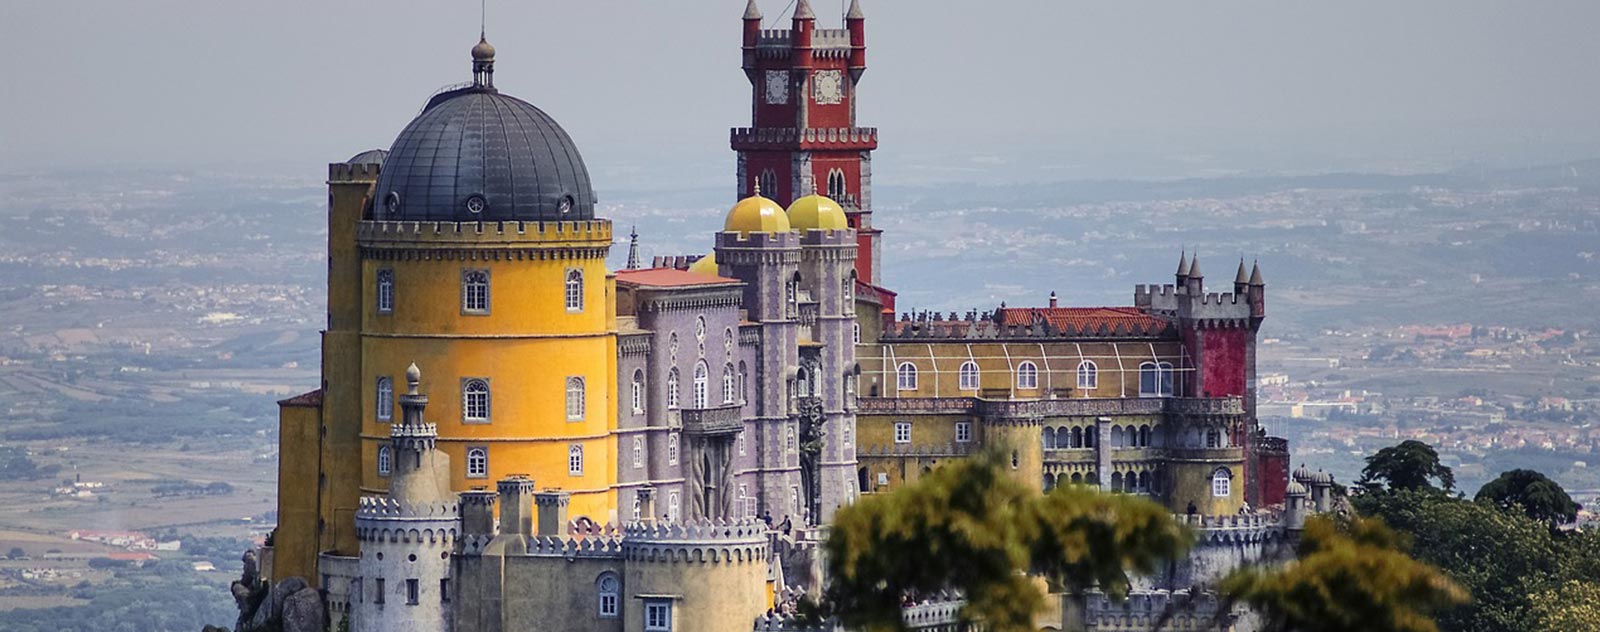 portugal-castillo-da-pena